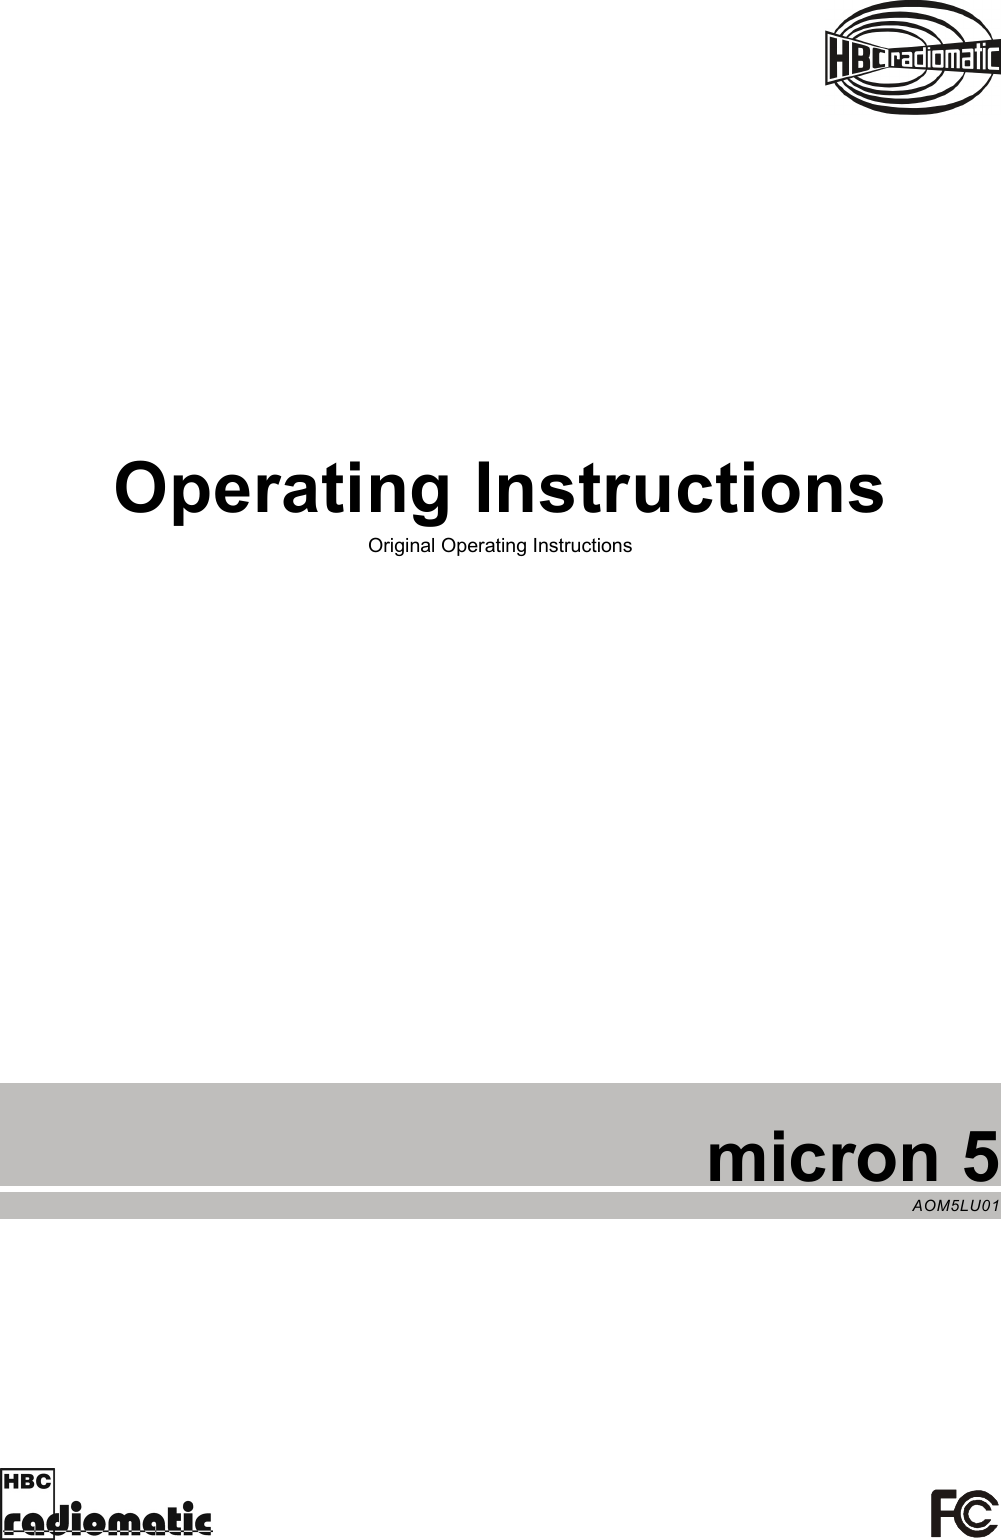     micron 5 AOM5LU01  Operating Instructions  Original Operating Instructions 